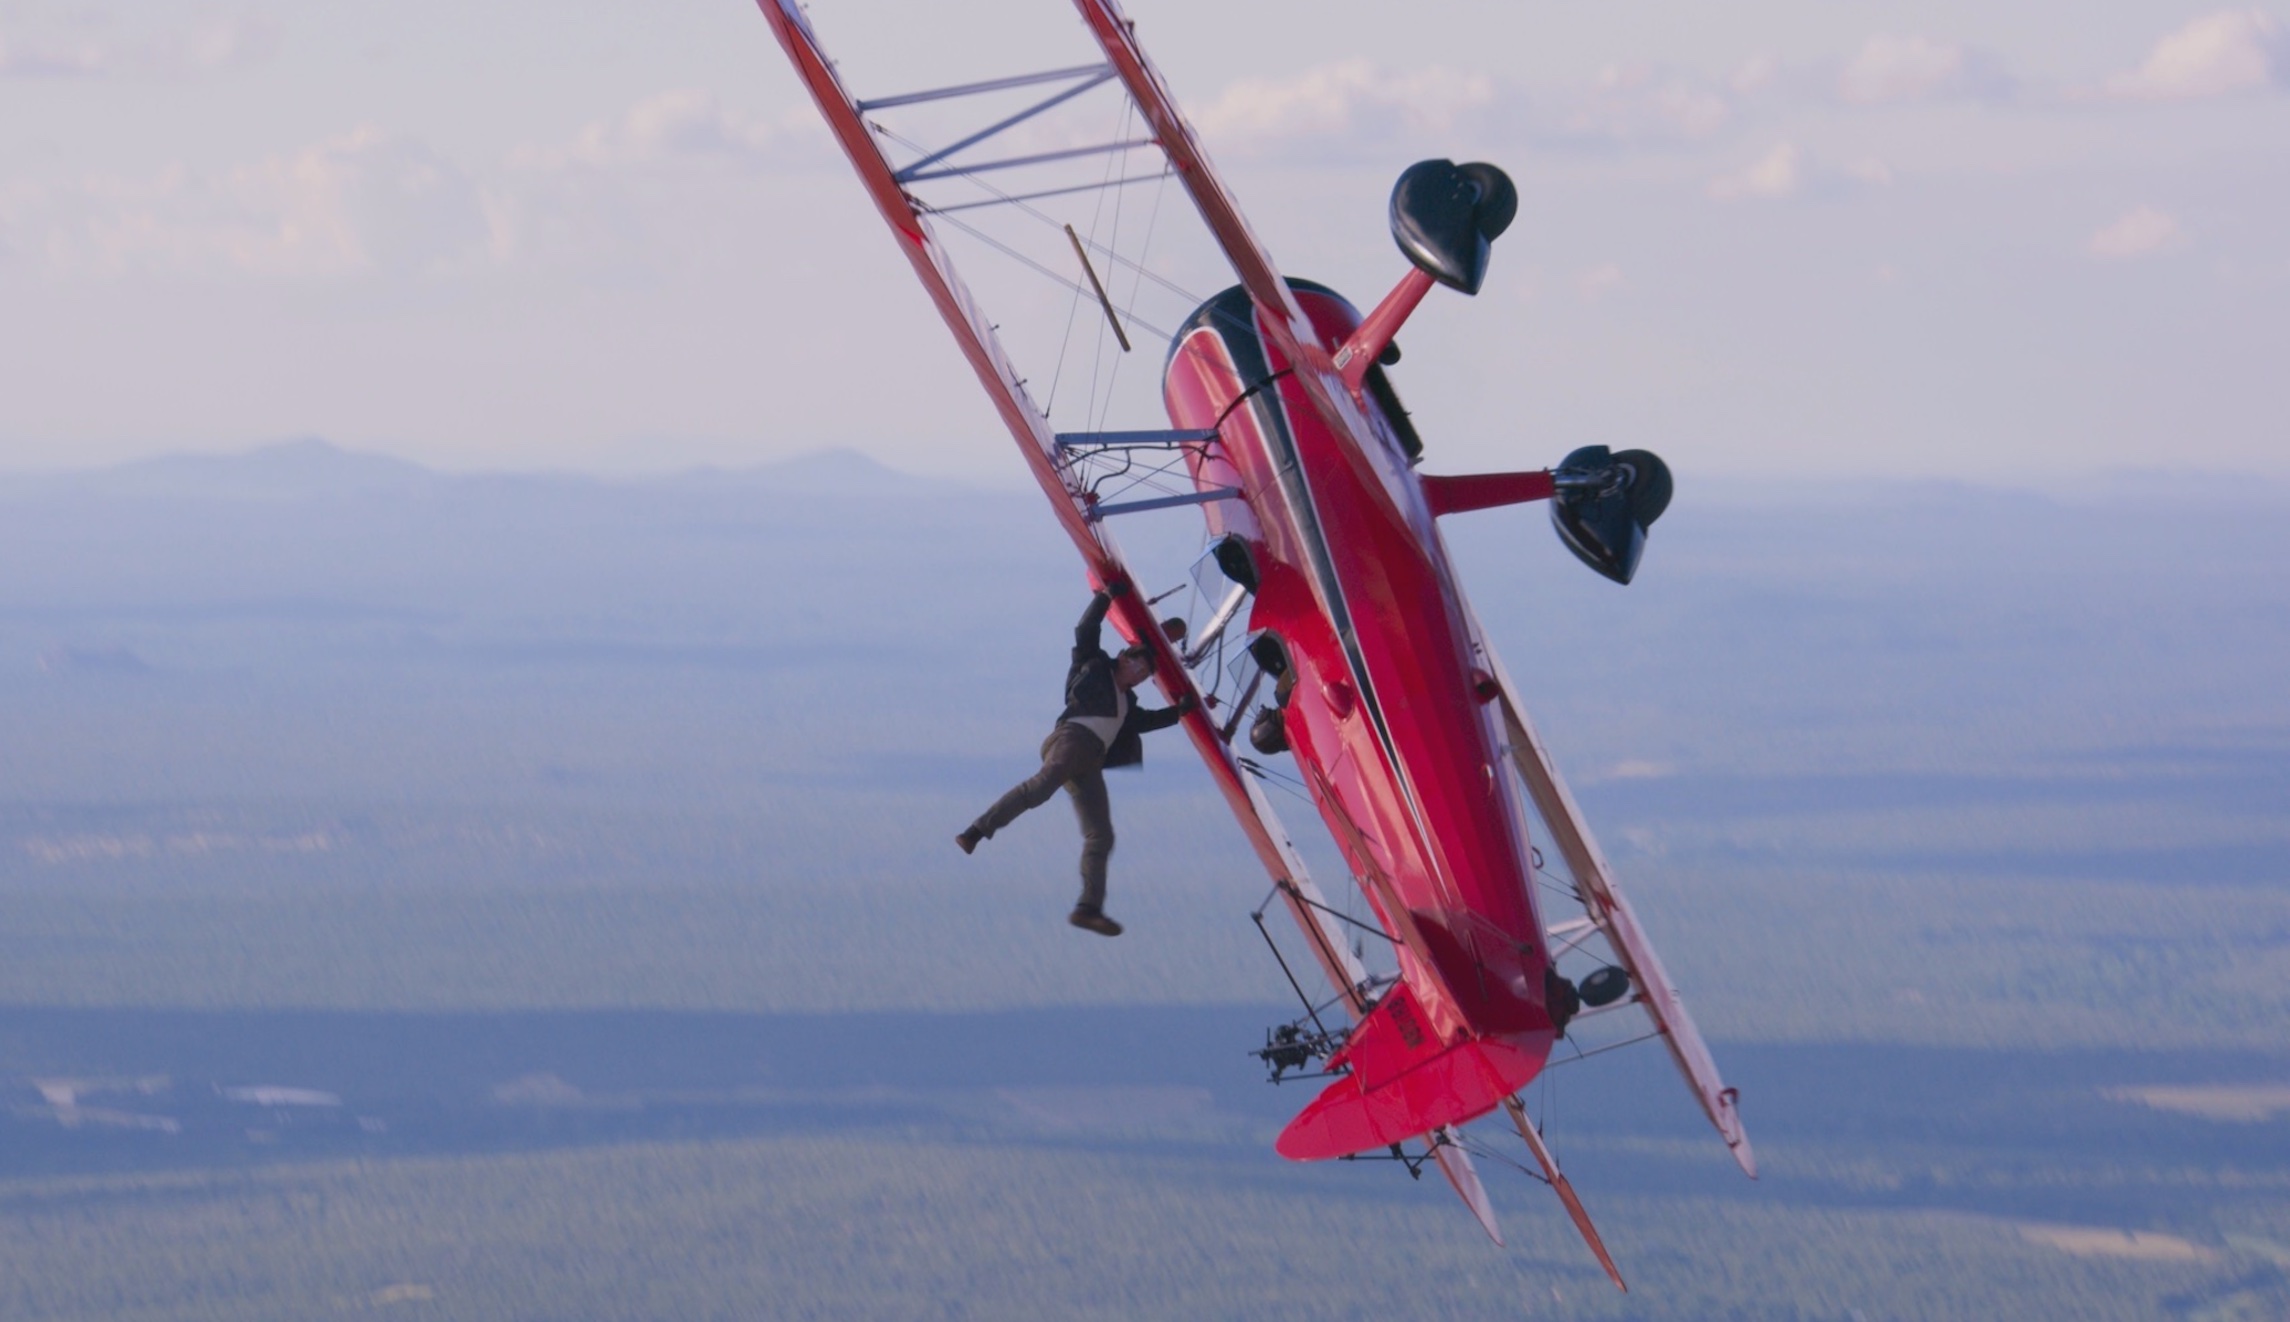 SEE IT: Photo reveals Tom Cruise’s latest high-flying stunt - Washington Examiner